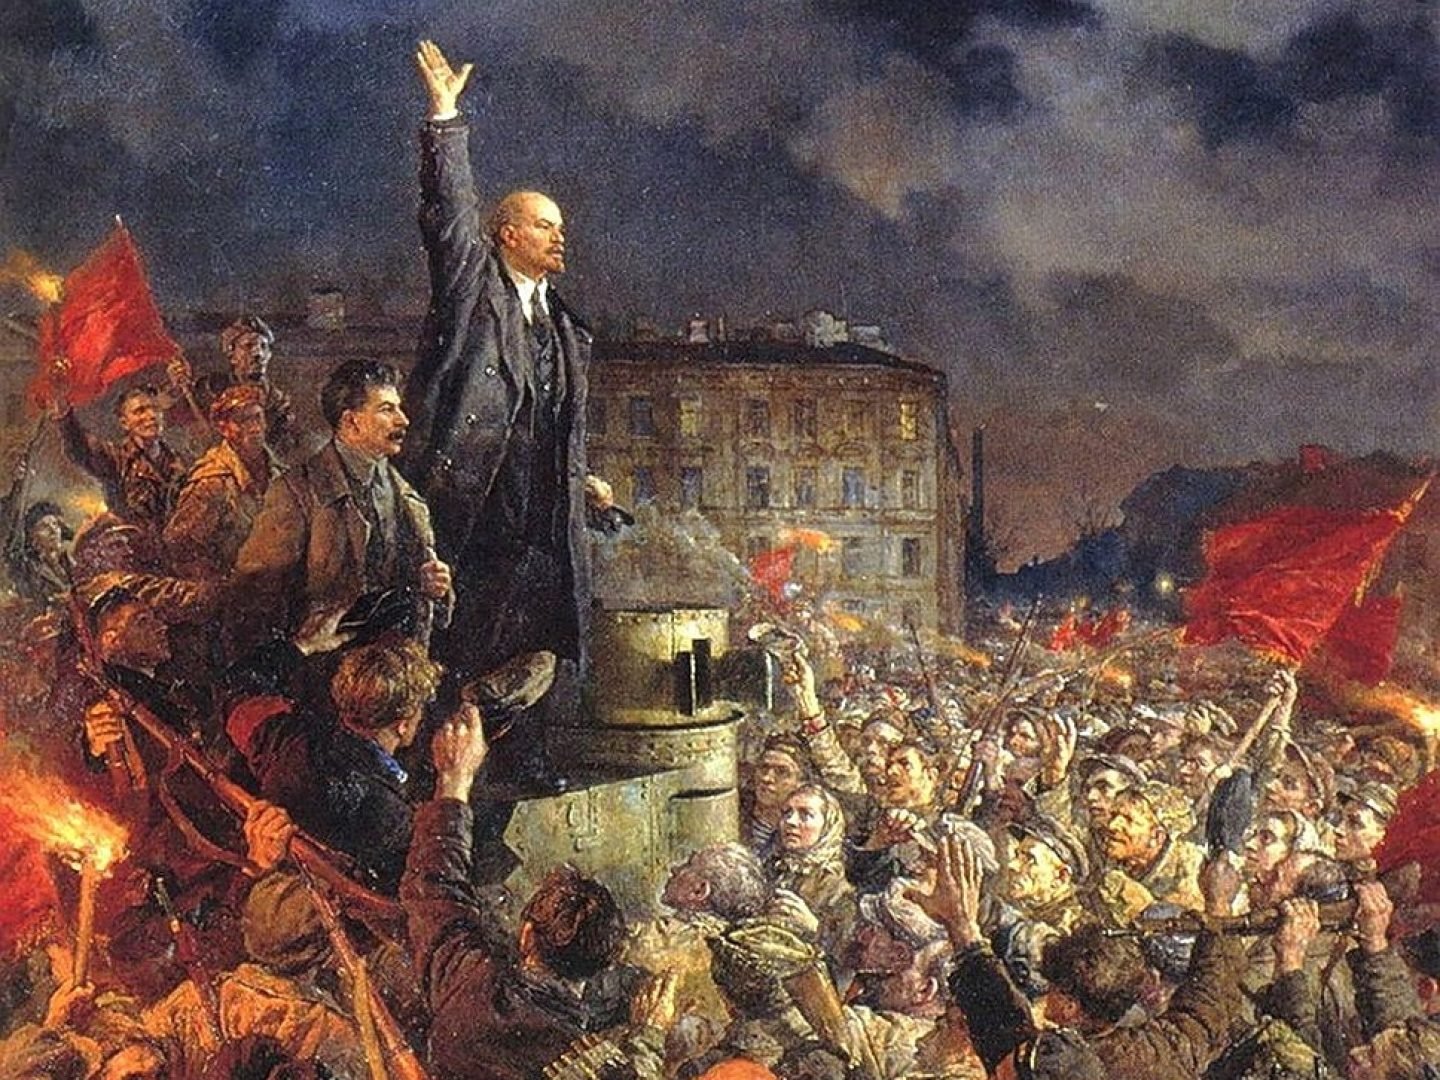 Российская революция октябрь 1917